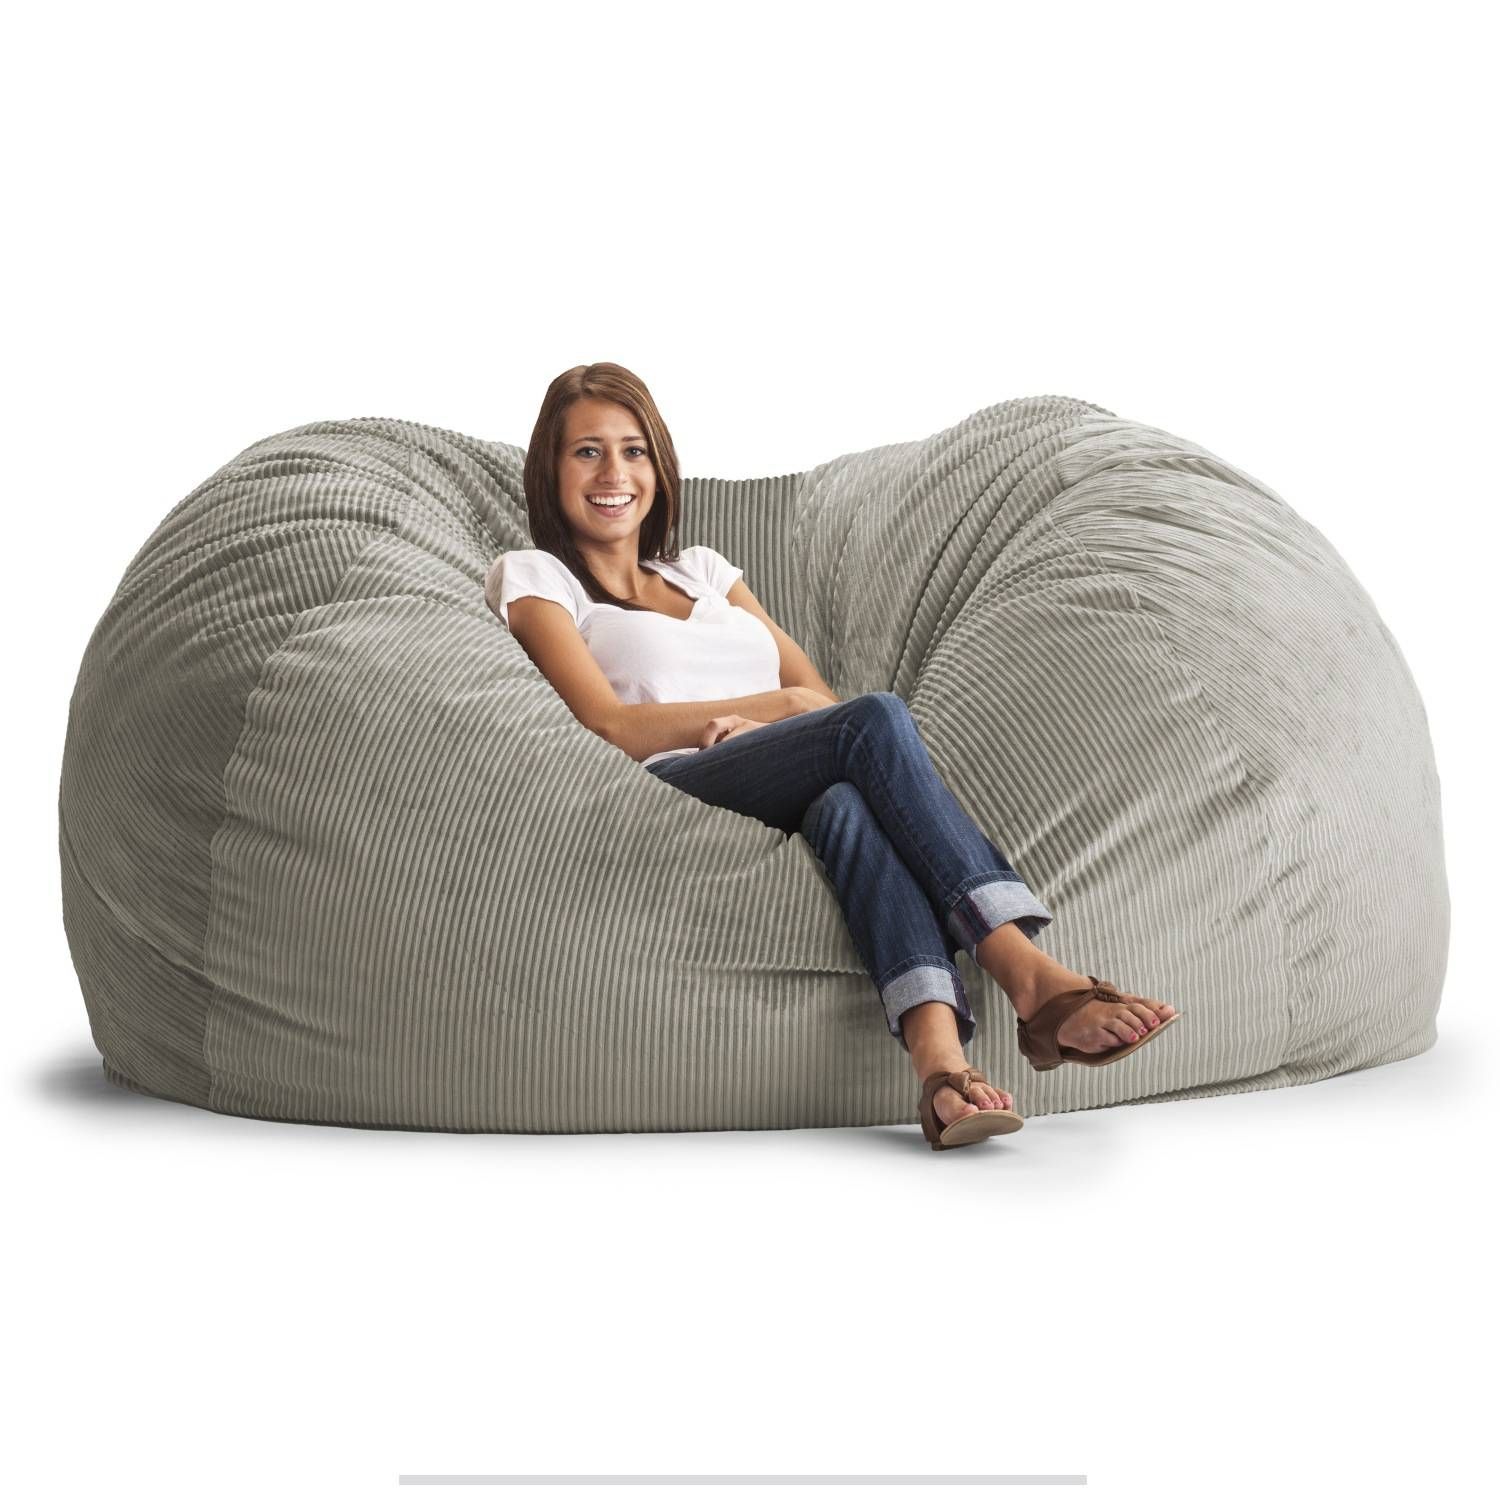 Furniture & Sofa: Fascinating Big Joe Lumin Bean Bag Chair With For Big Joe Sofas (View 4 of 15)